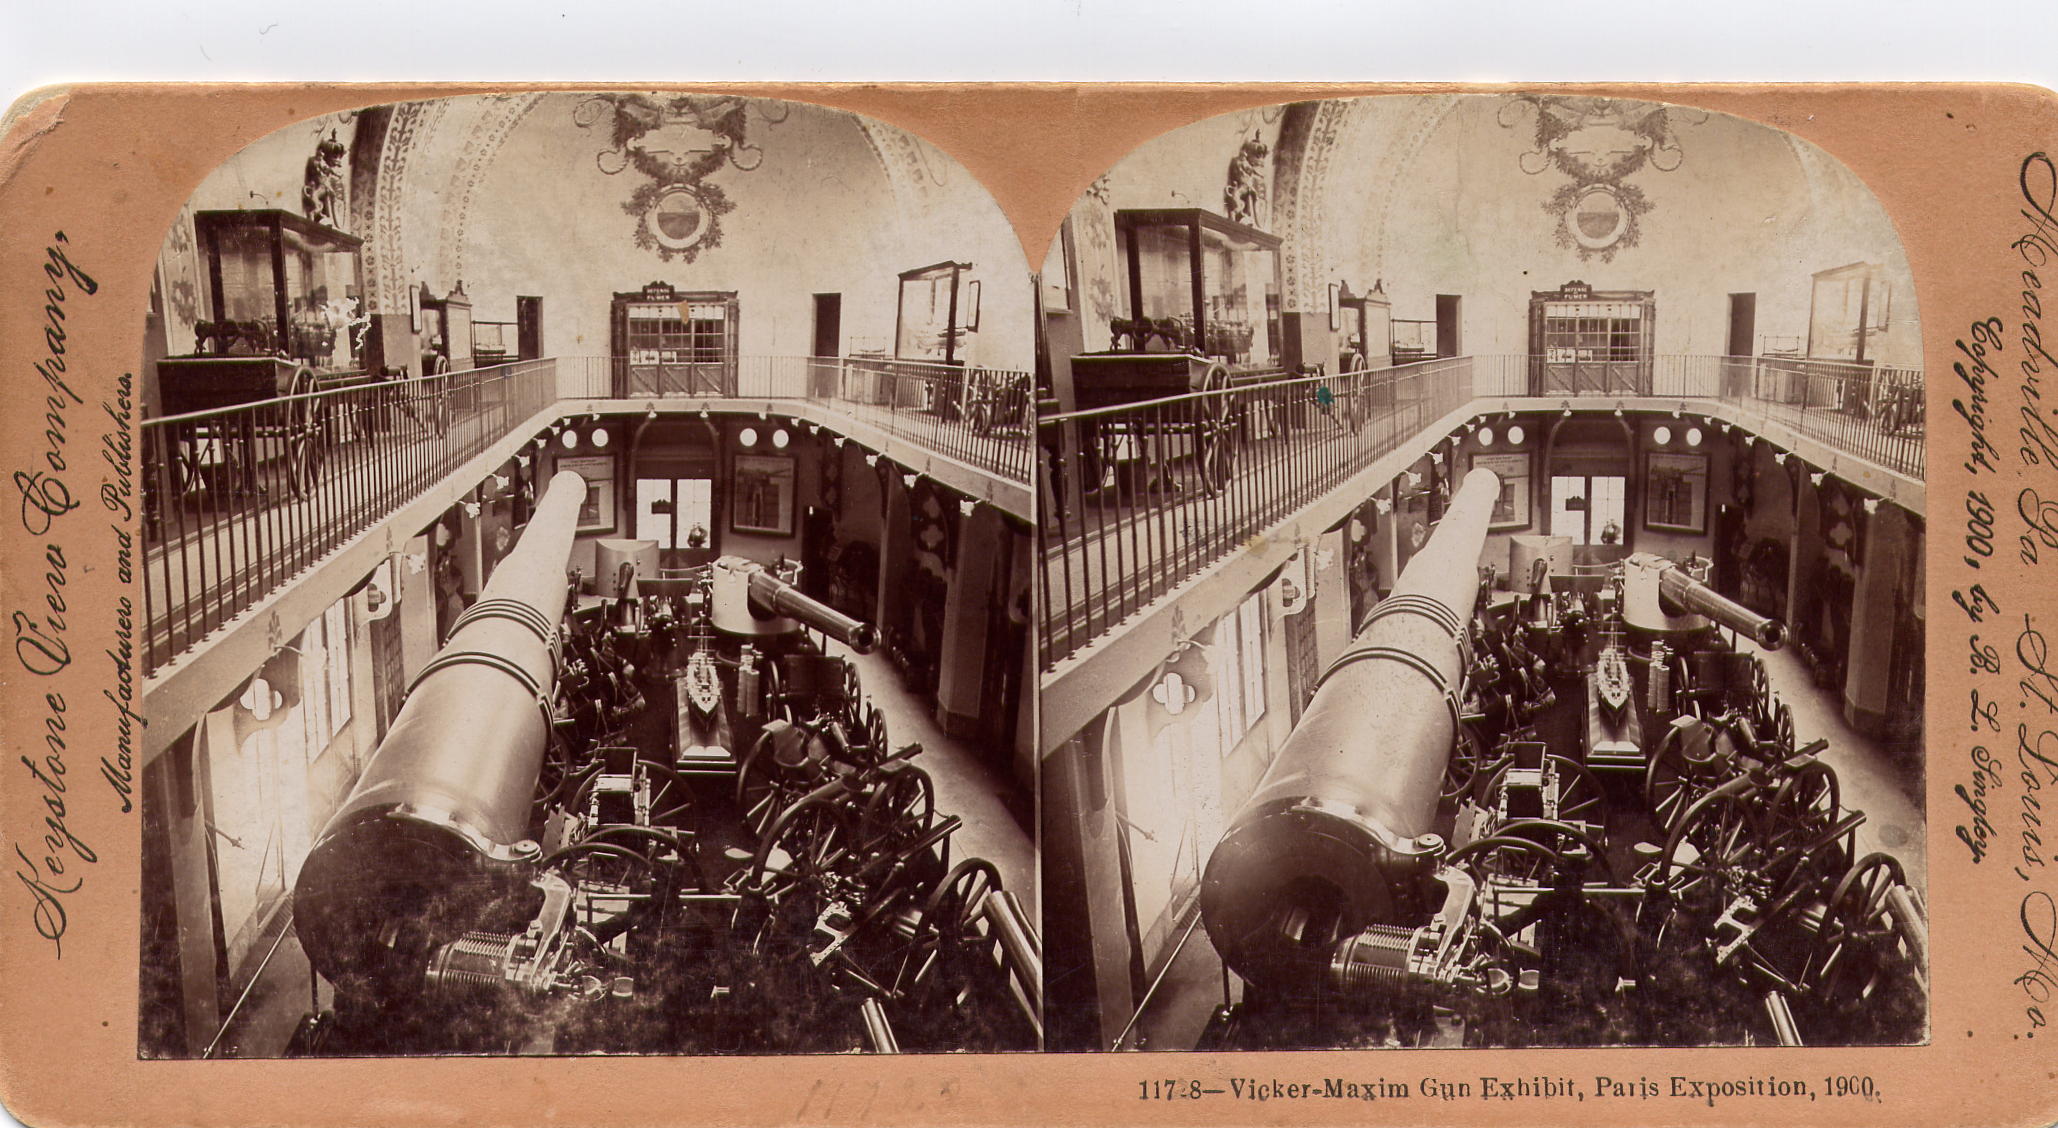 Vicker-Maxim Gun Exhibit, Paris Exposition, 1900